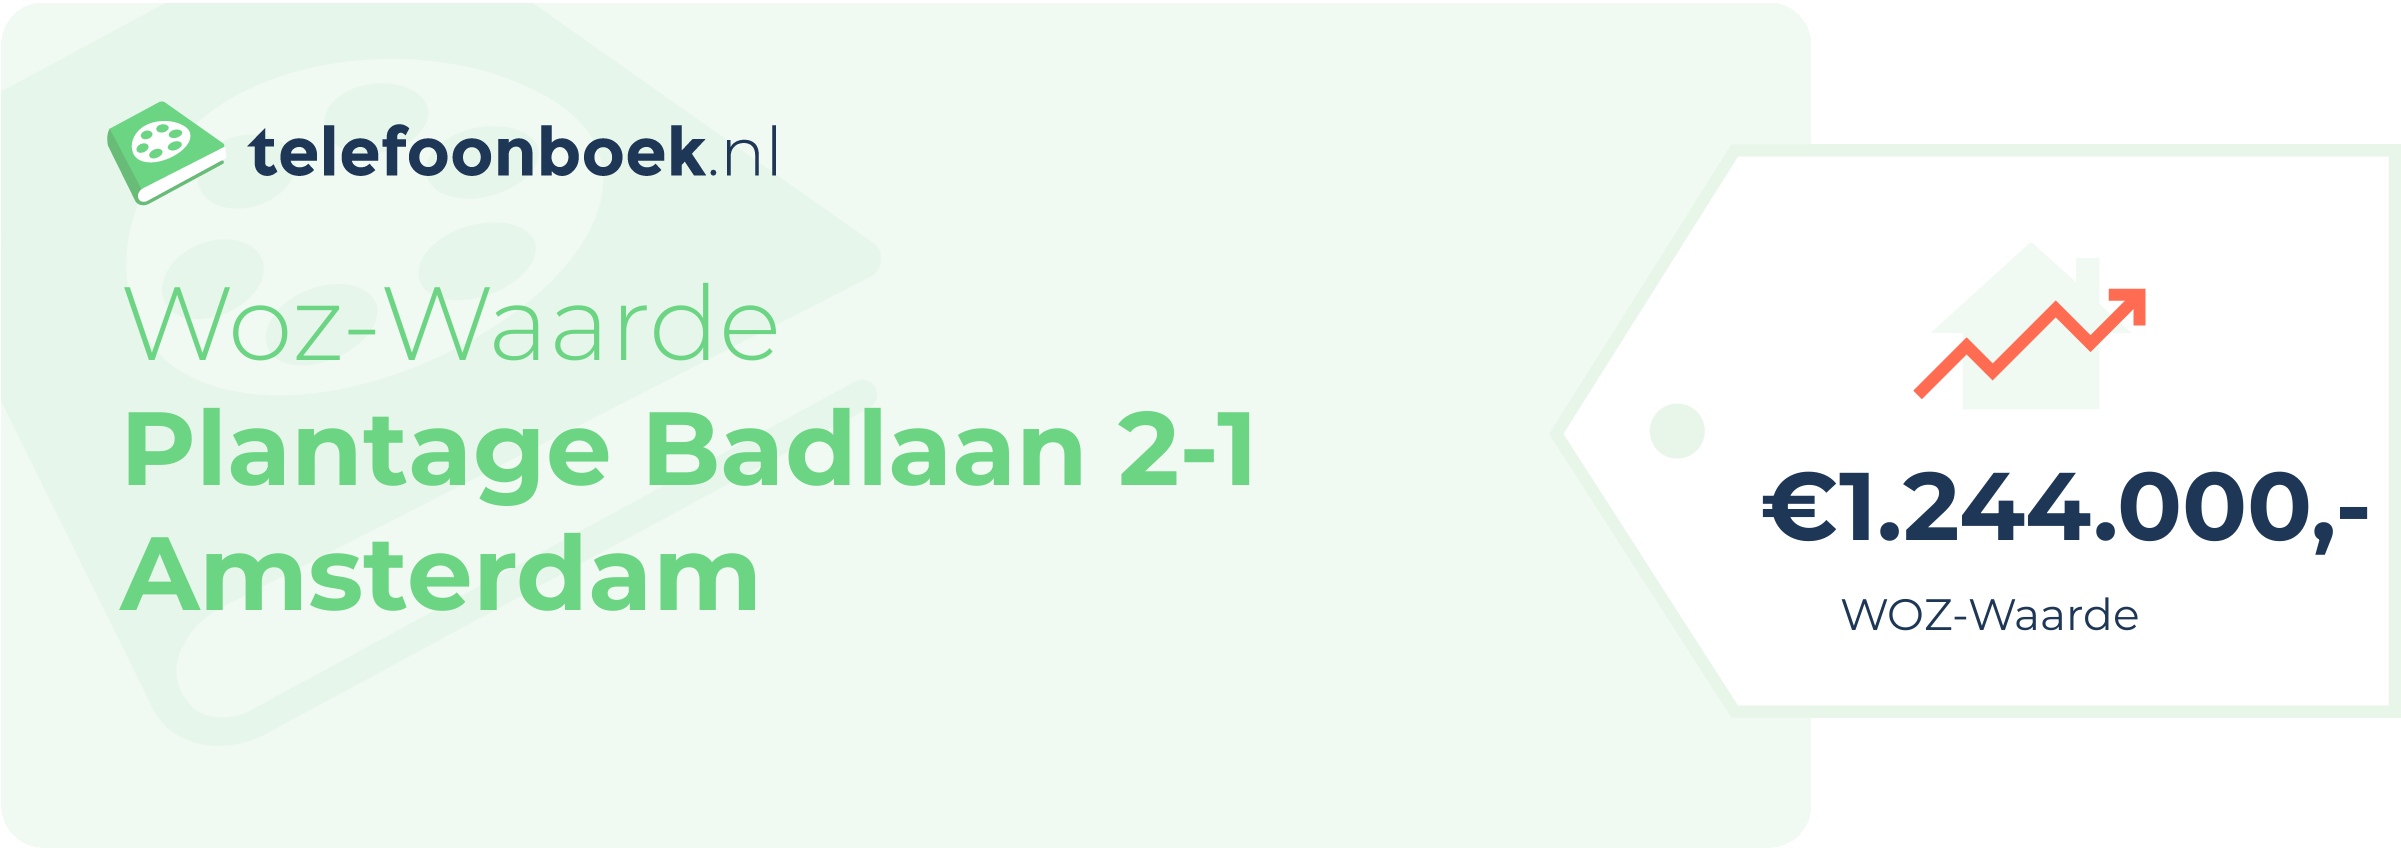 WOZ-waarde Plantage Badlaan 2-1 Amsterdam